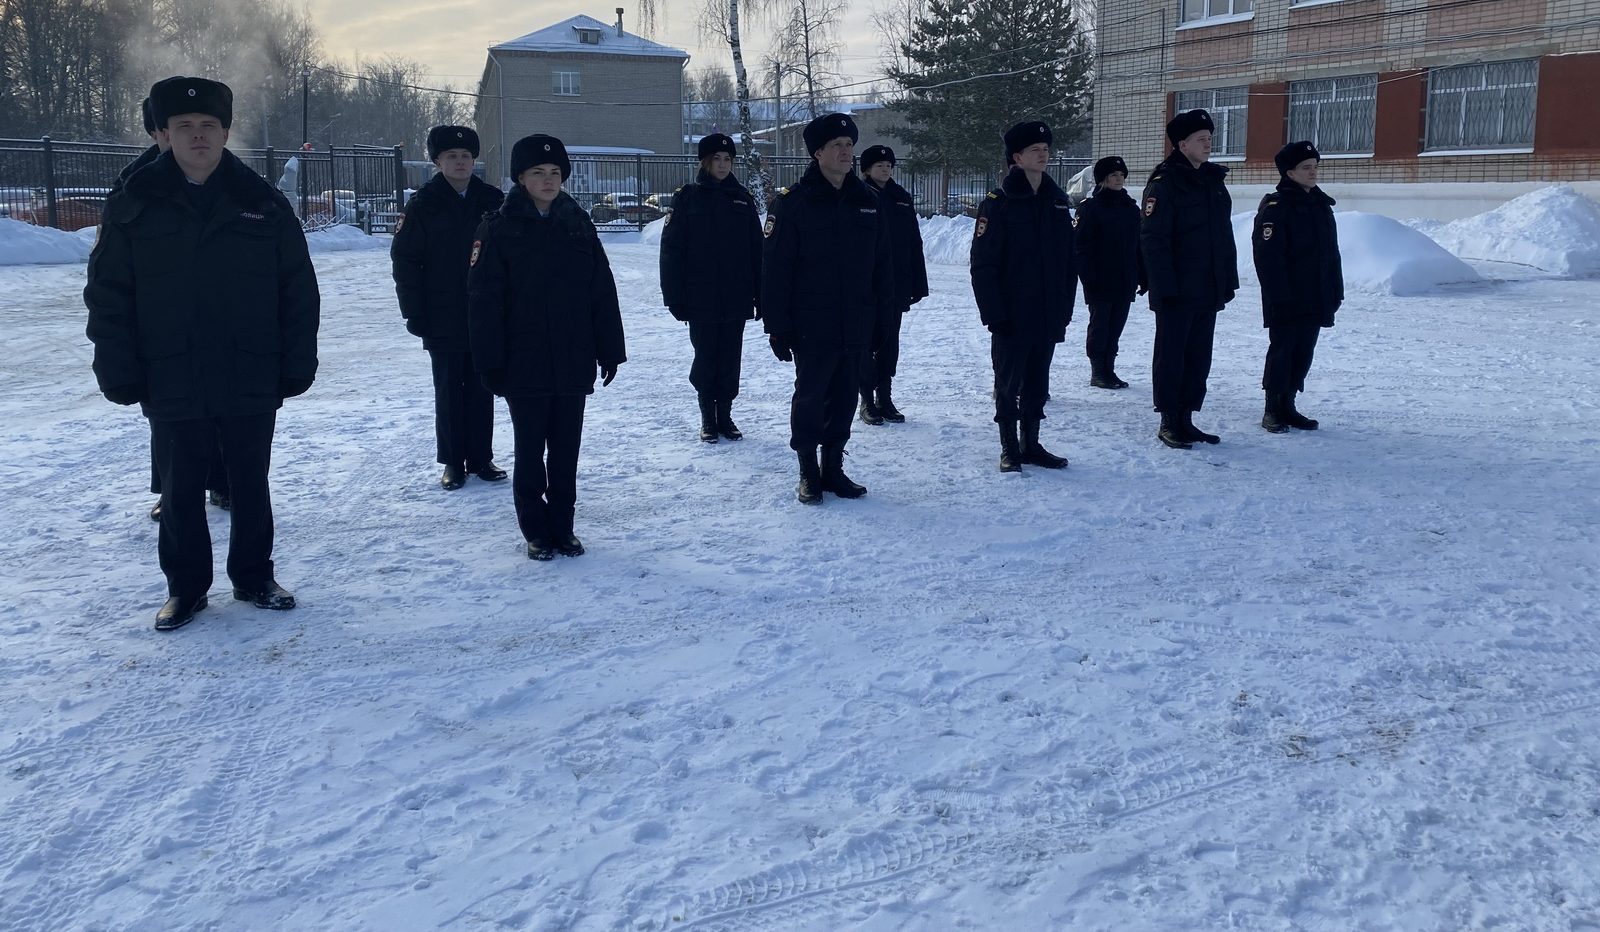 Молодые сотрудники полиции приняли присягу в Костроме